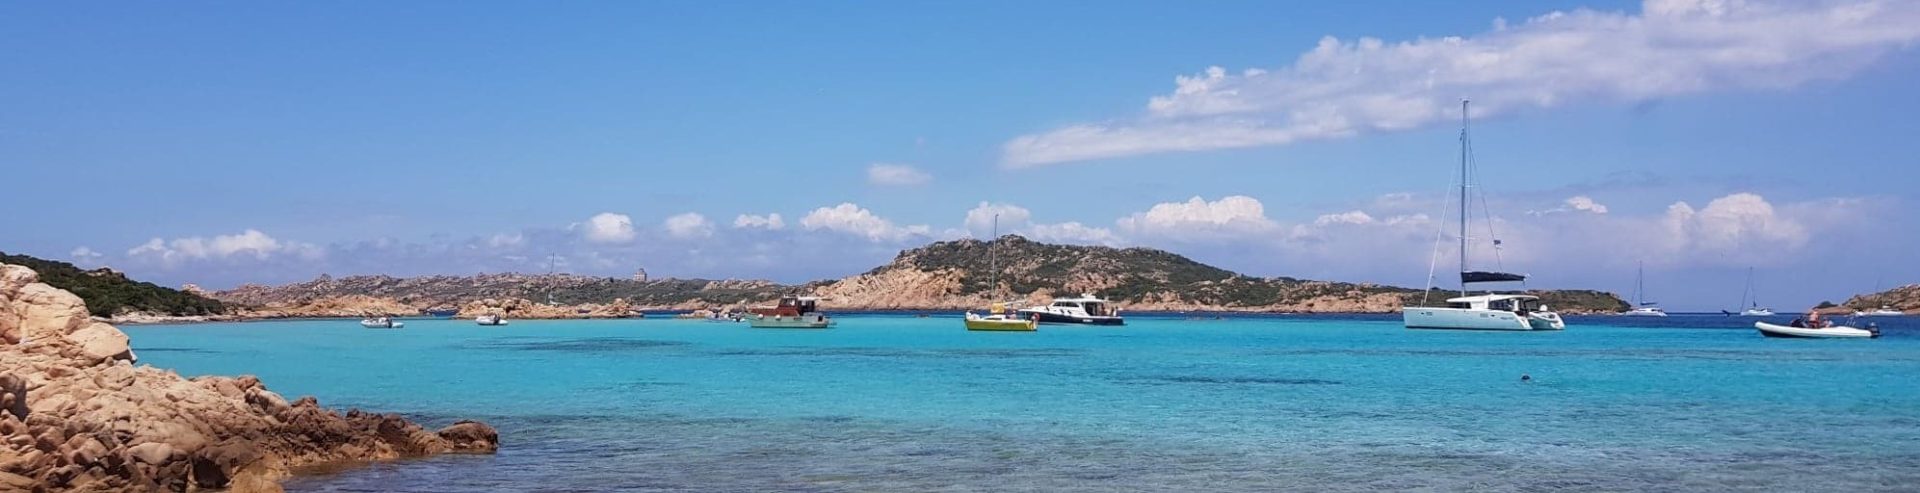 7-dniowy plan rejsu szlakiem turkusowych zatok – Sardynia